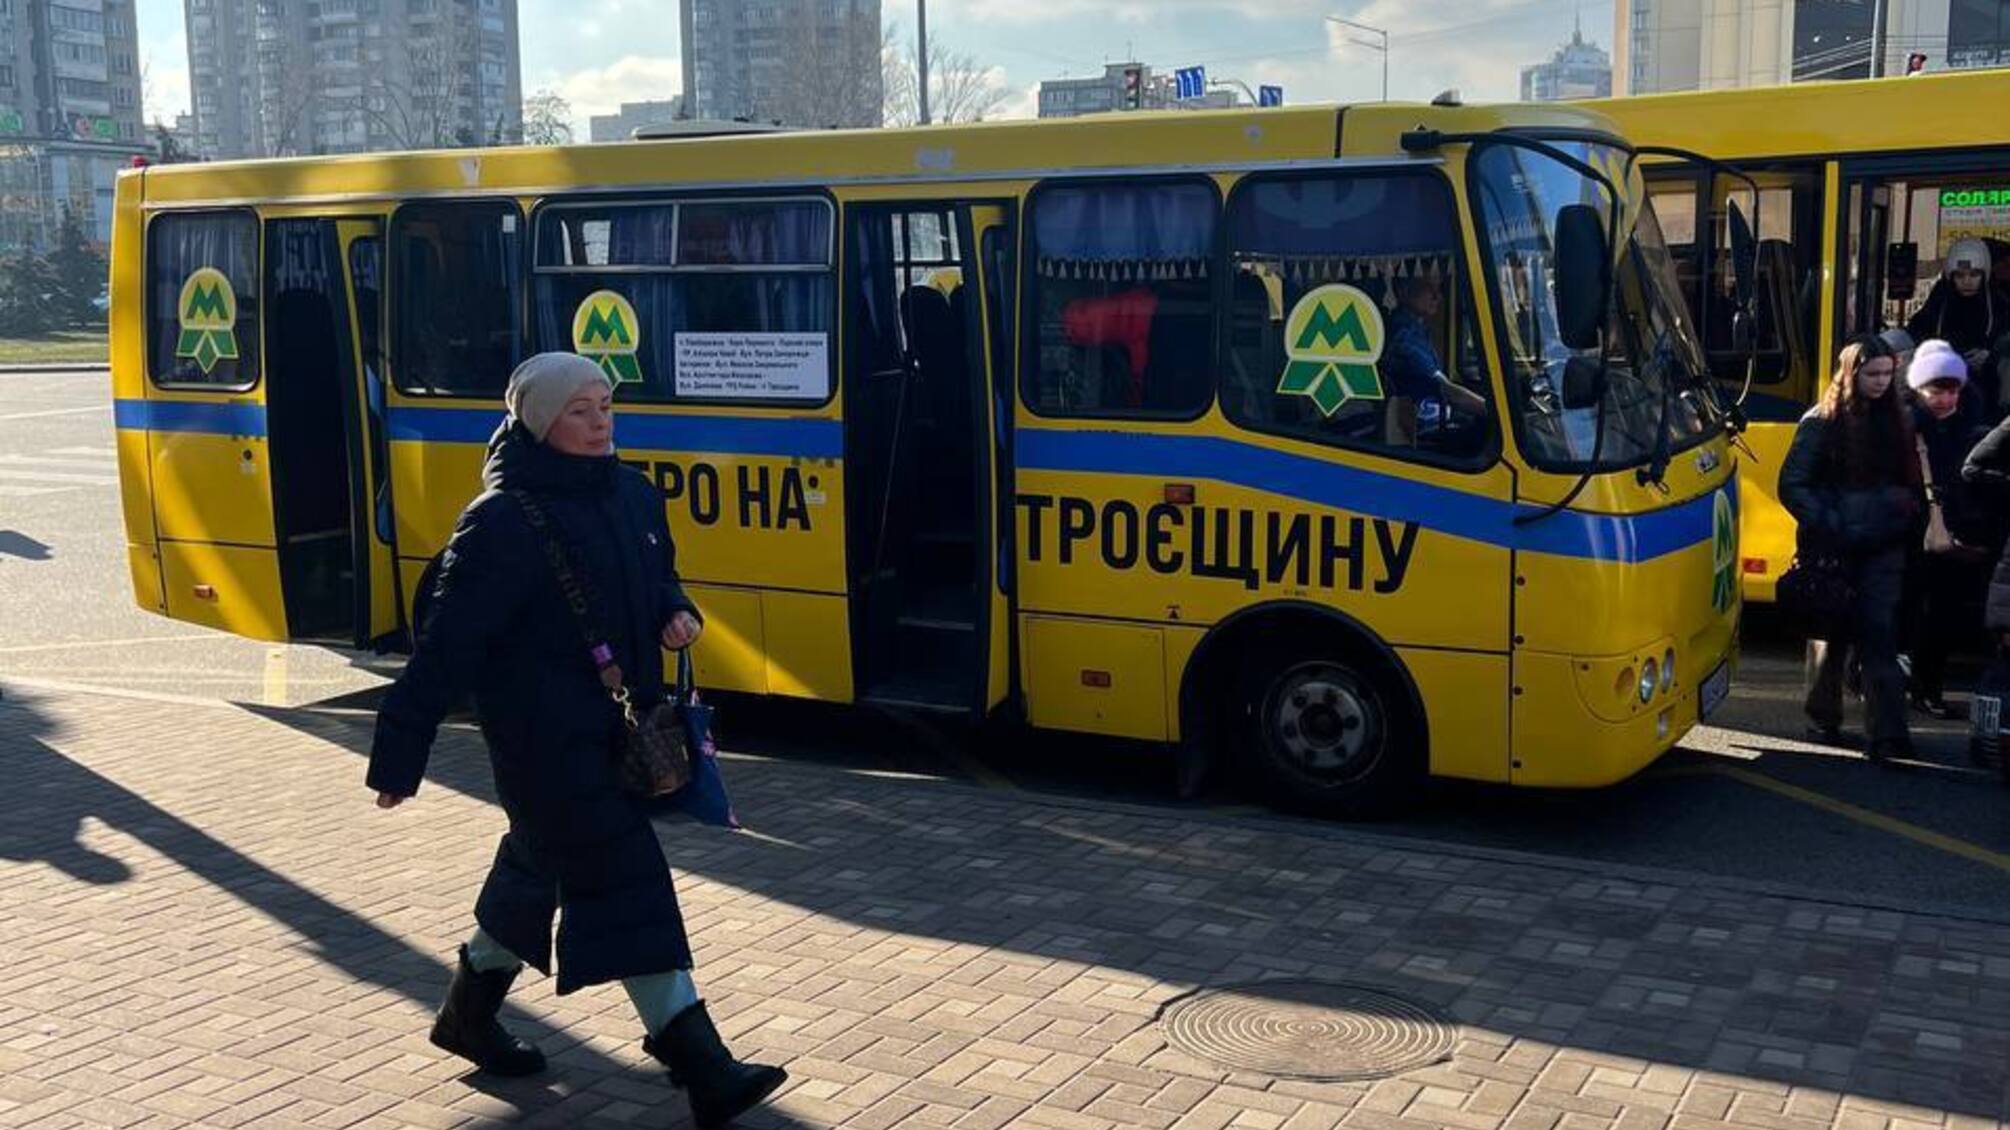 У Києві запустили 'метро на Троєщину'?